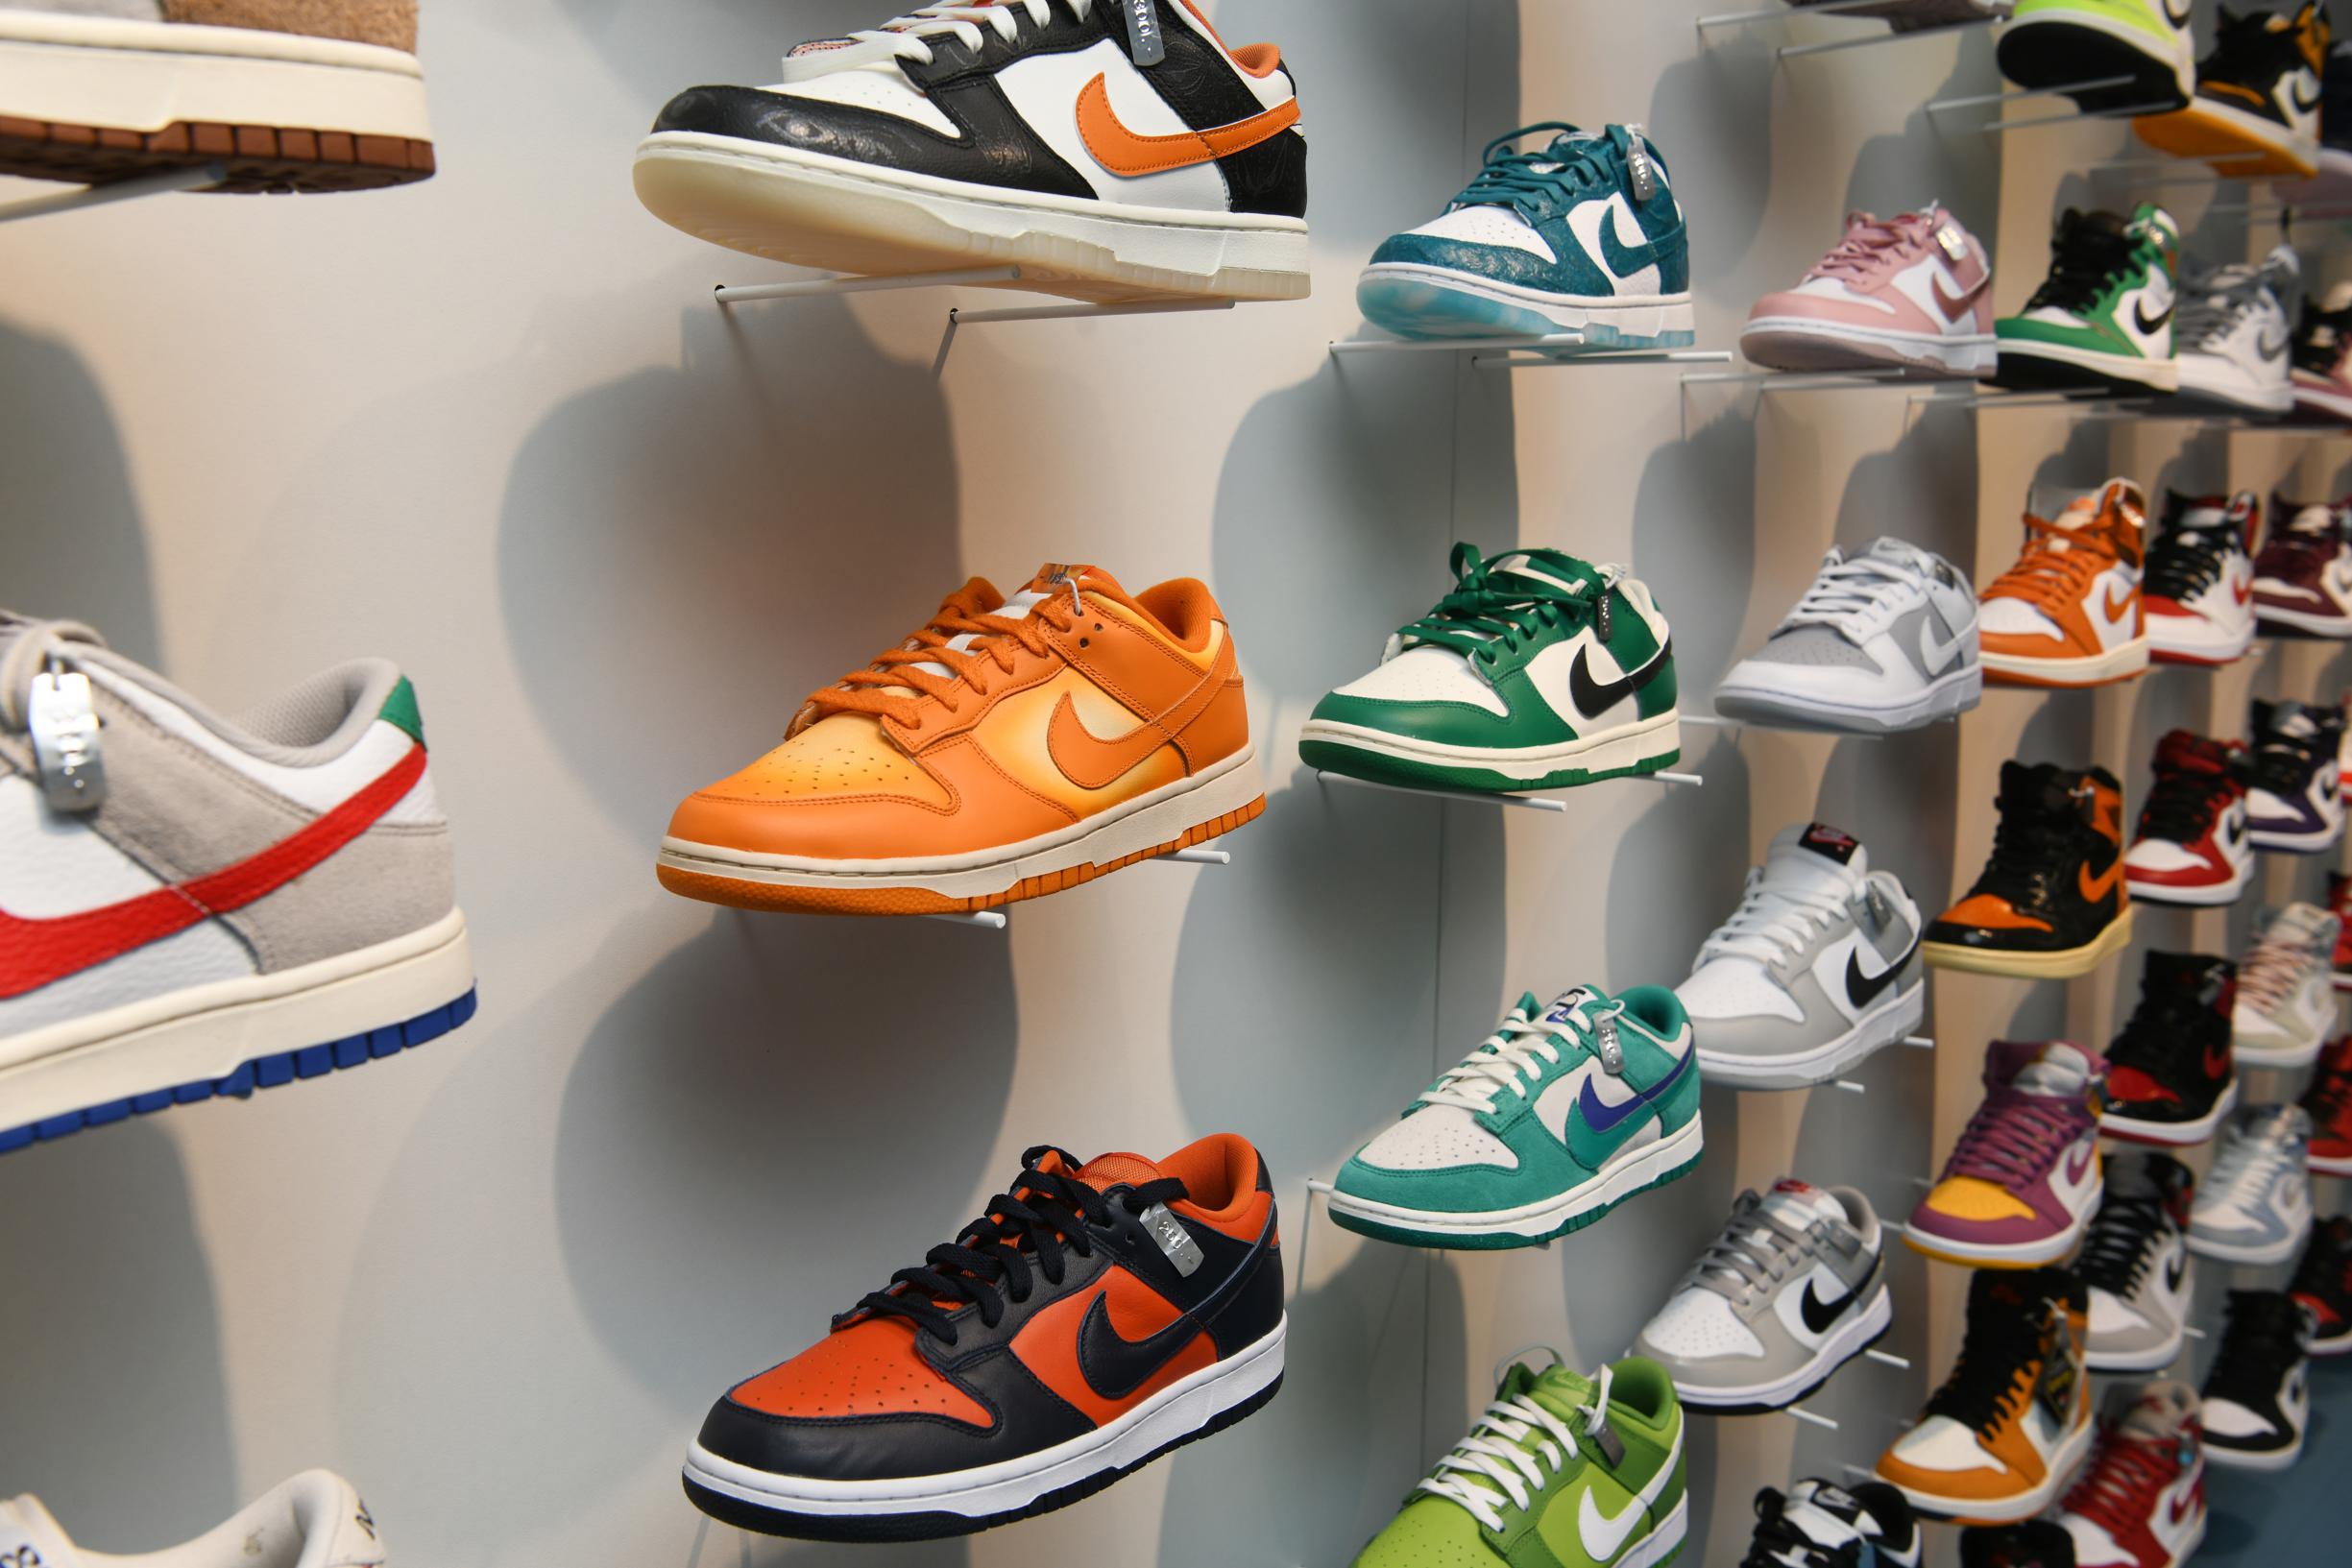 huisvrouw compromis Isolator Amerikaans-Belgische sneakerwinkel Drip Drop opent in Kammenstraat:  “Sneakers zijn als alcohol en tabak: ze zullen nooit verdwijnen” (Antwerpen)  | Gazet van Antwerpen Mobile